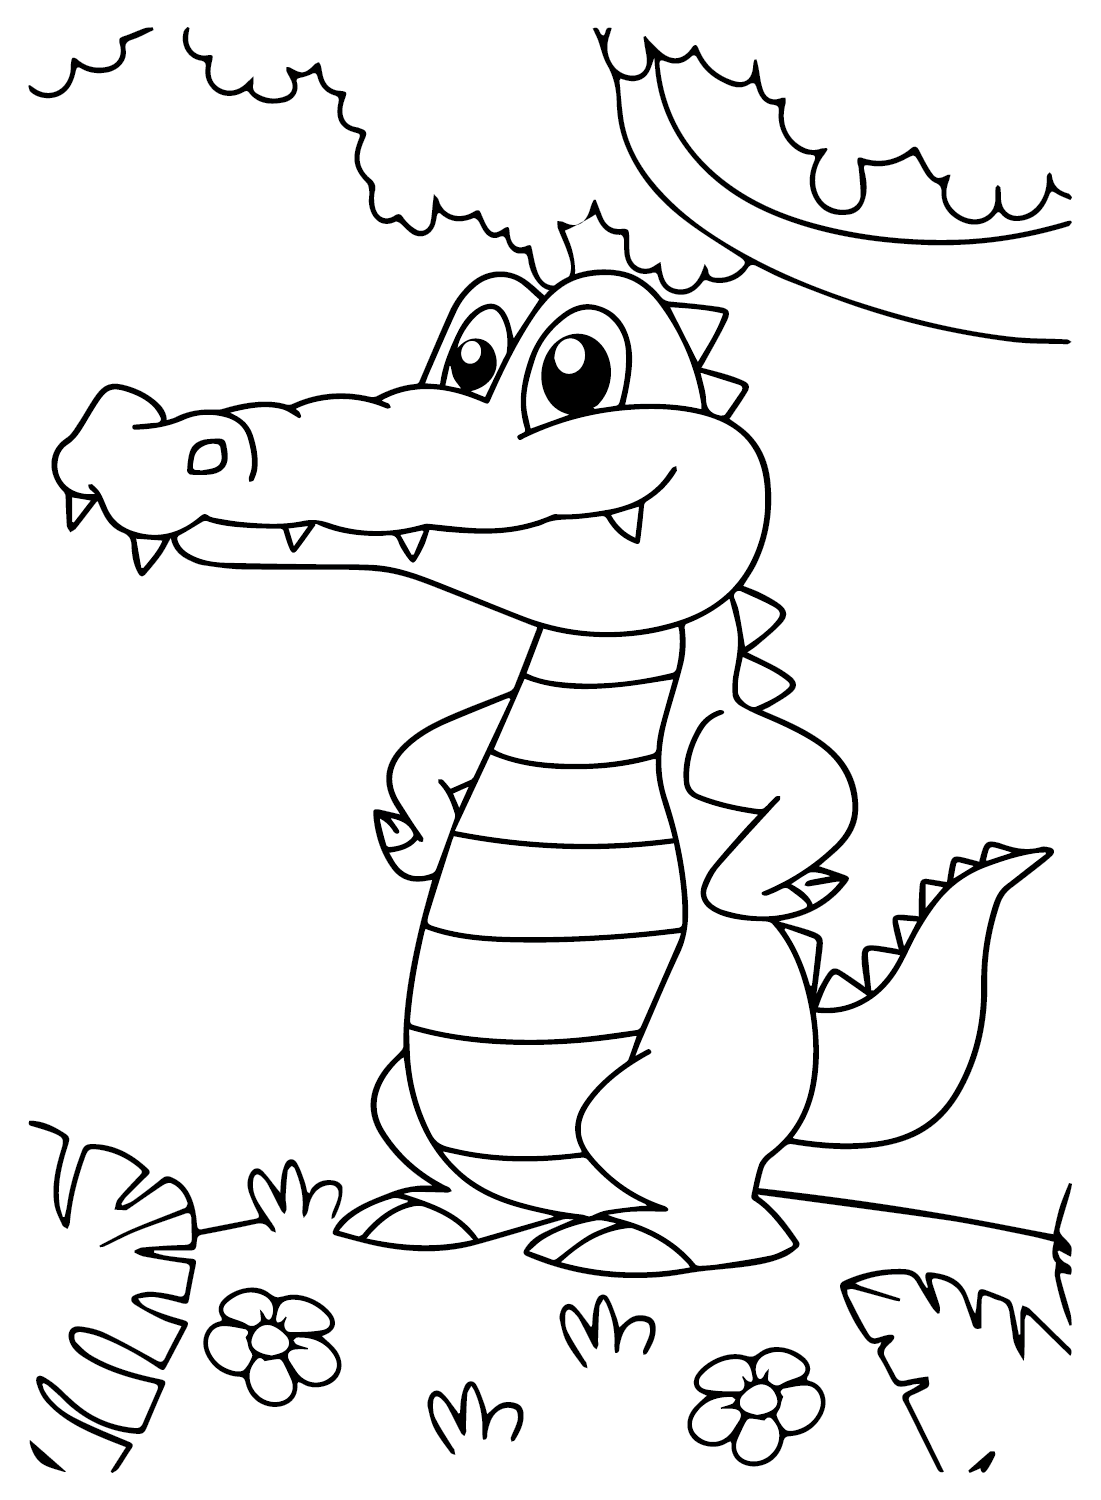 Página para colorear de dibujos animados de cocodrilo de Cocodrilo